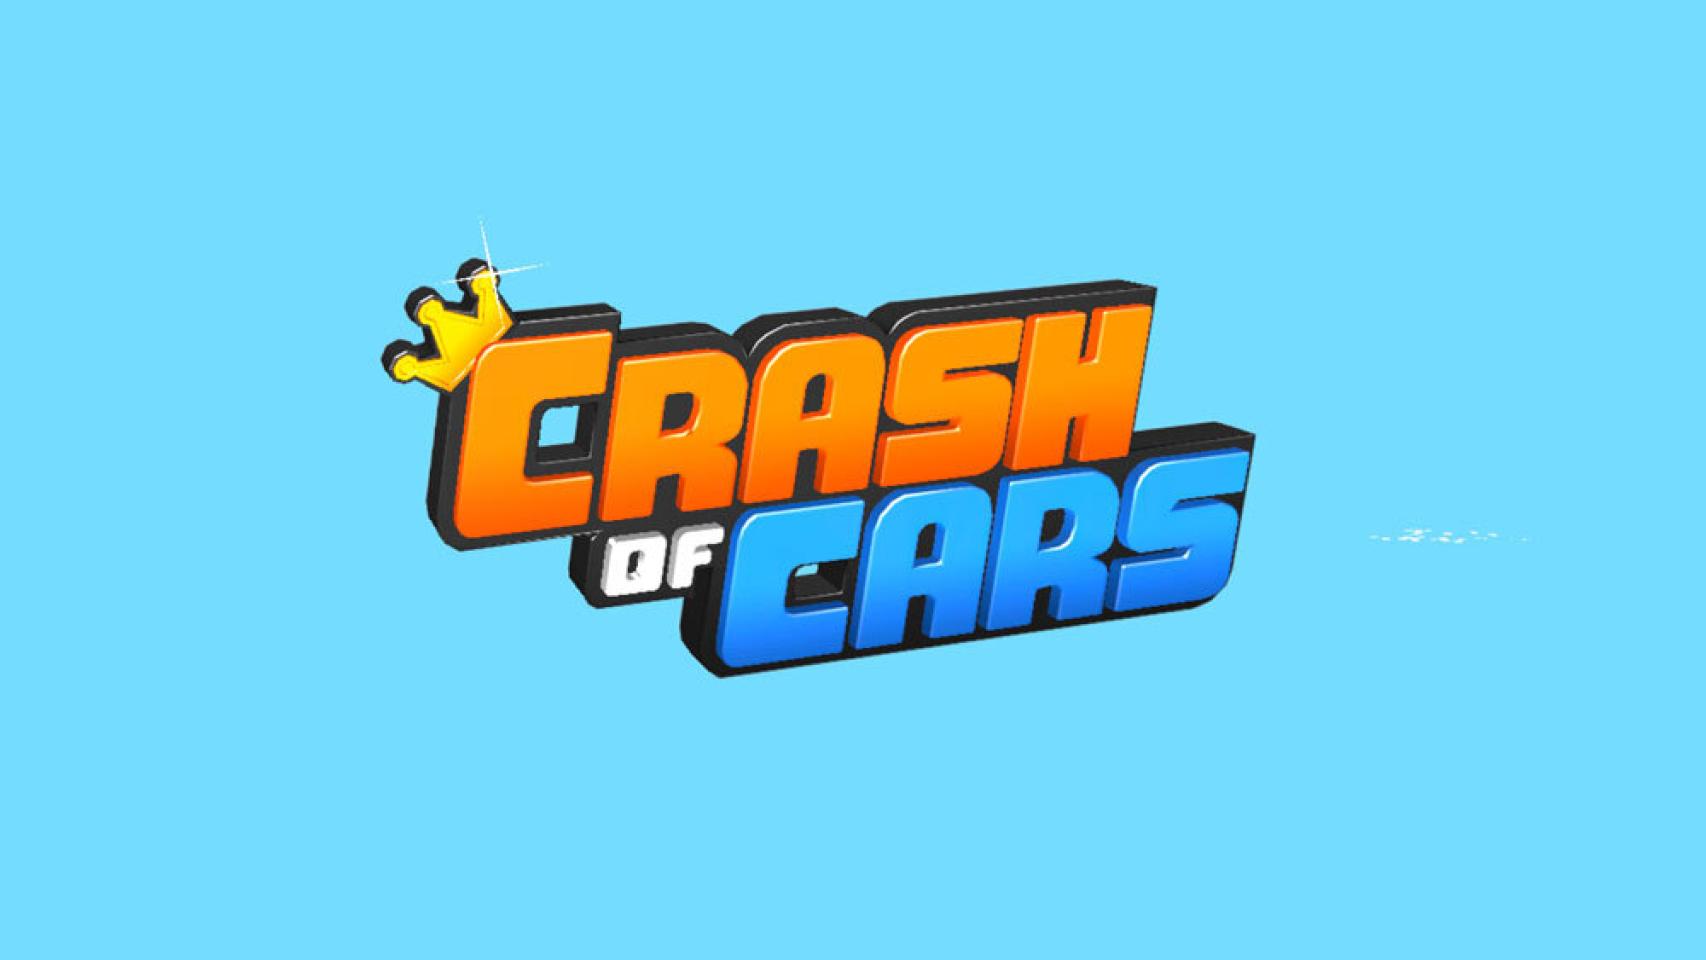 El modo batalla de Mario Kart llega a Android con este juego de coches